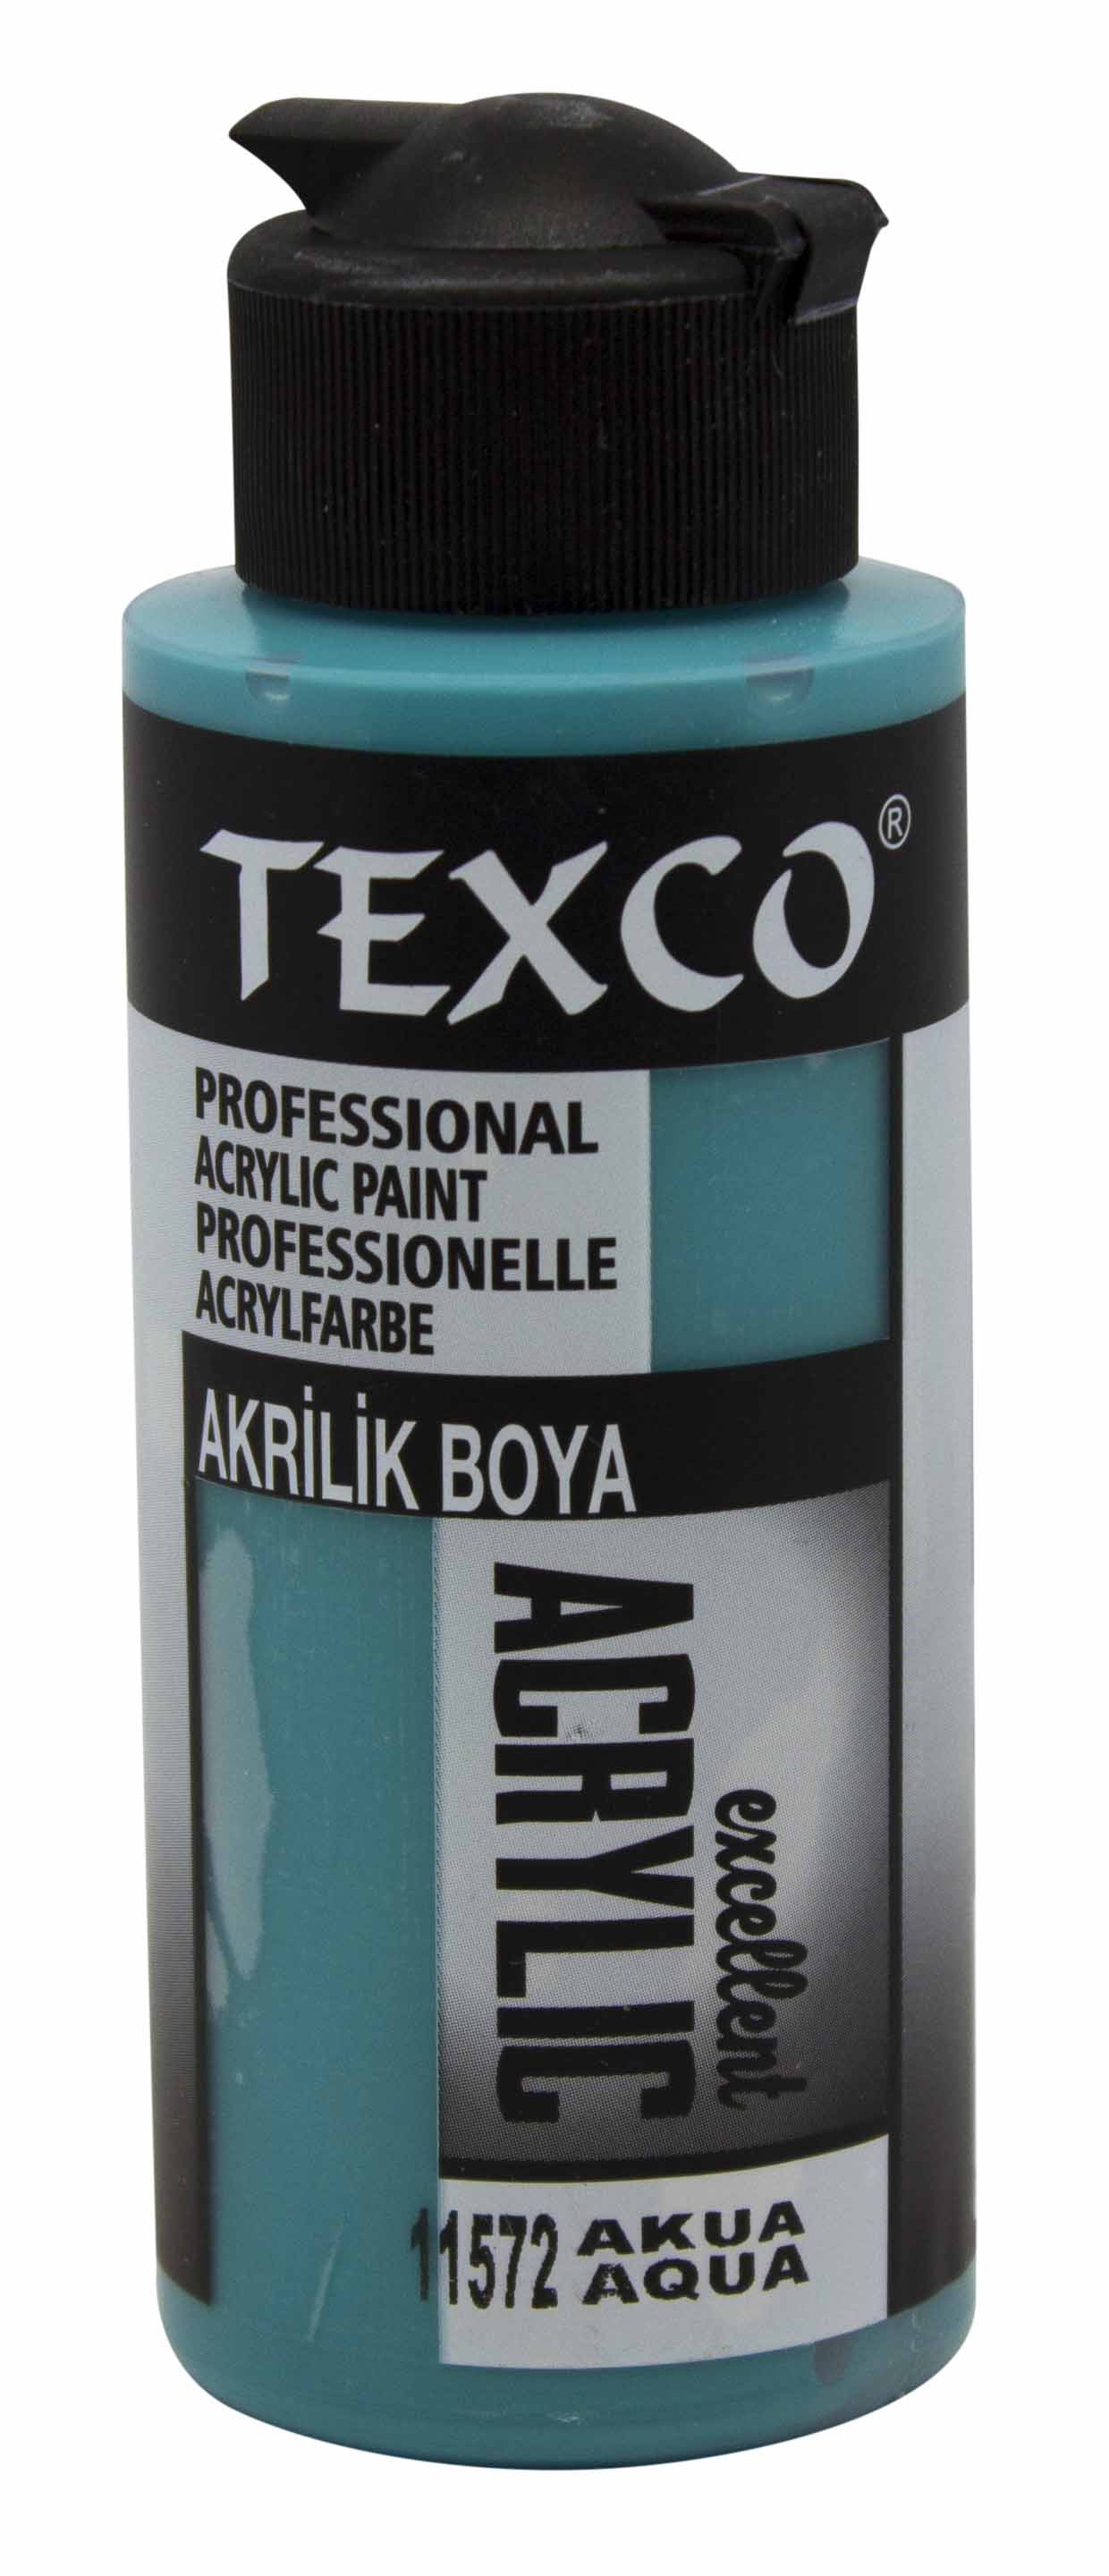 Texco Excellent Akrilik Boya 11572-Akua 110 cc